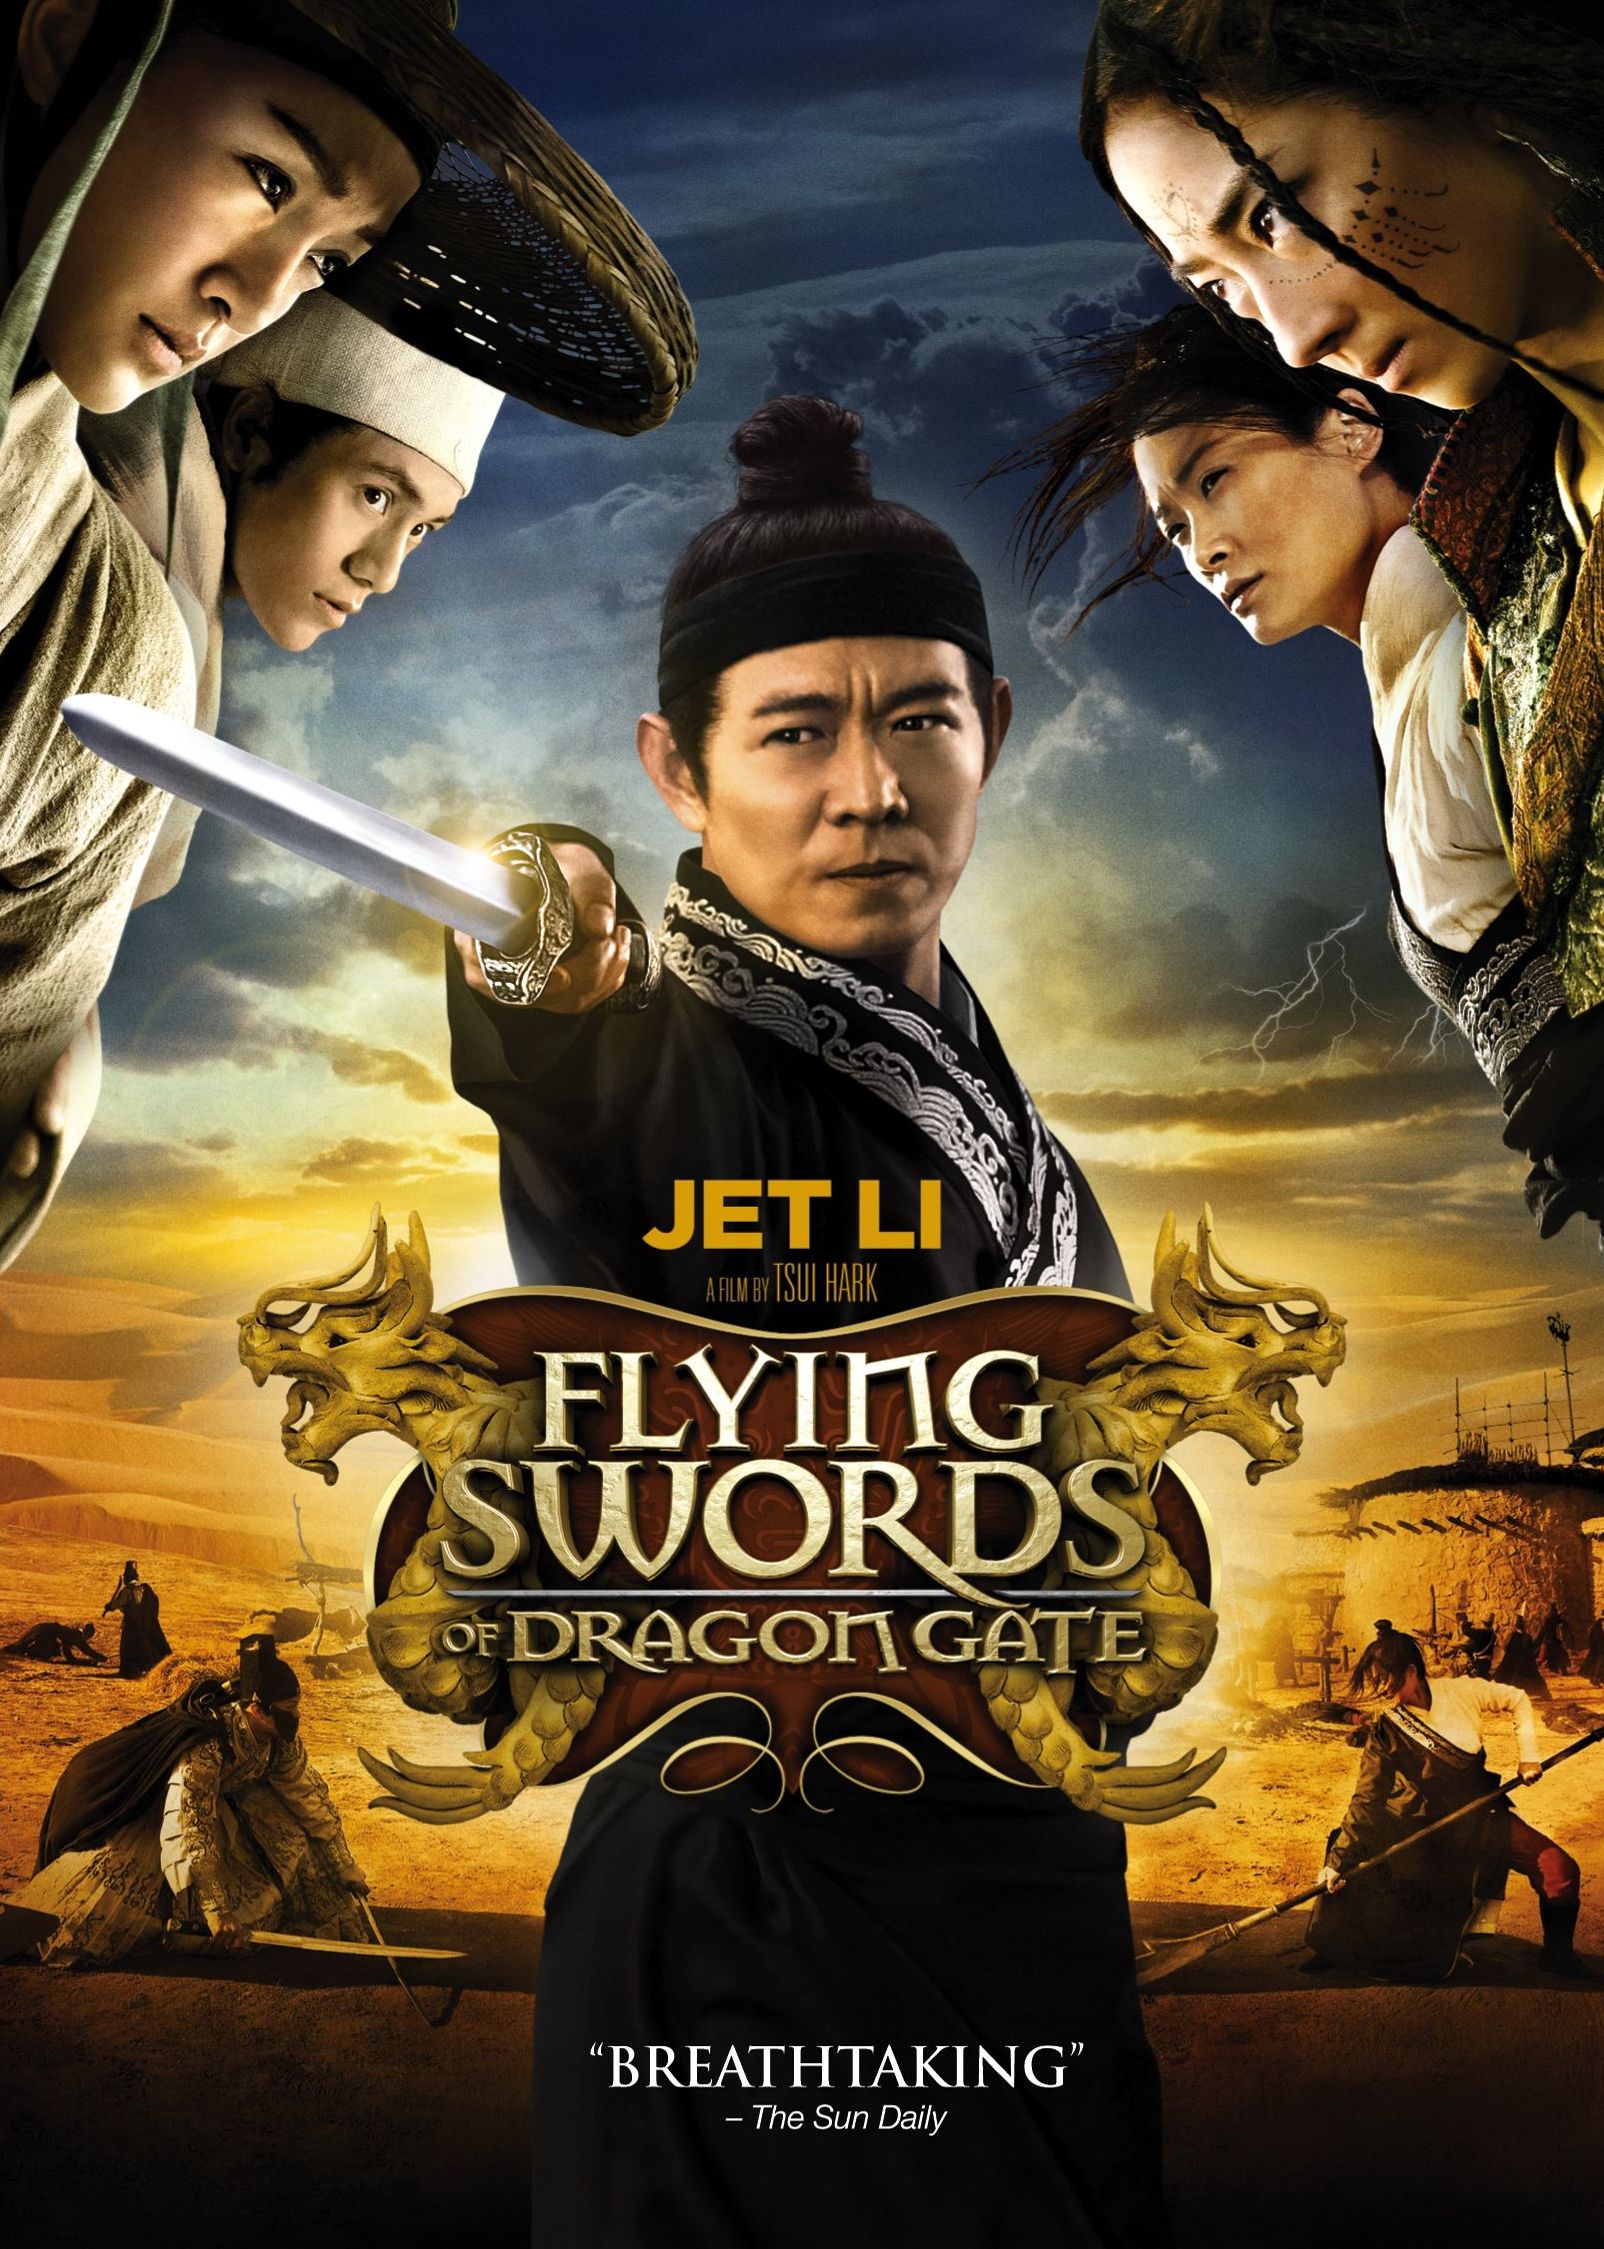 Flying Swords of Dragon Gate [DVD] [2011] - Best Buy